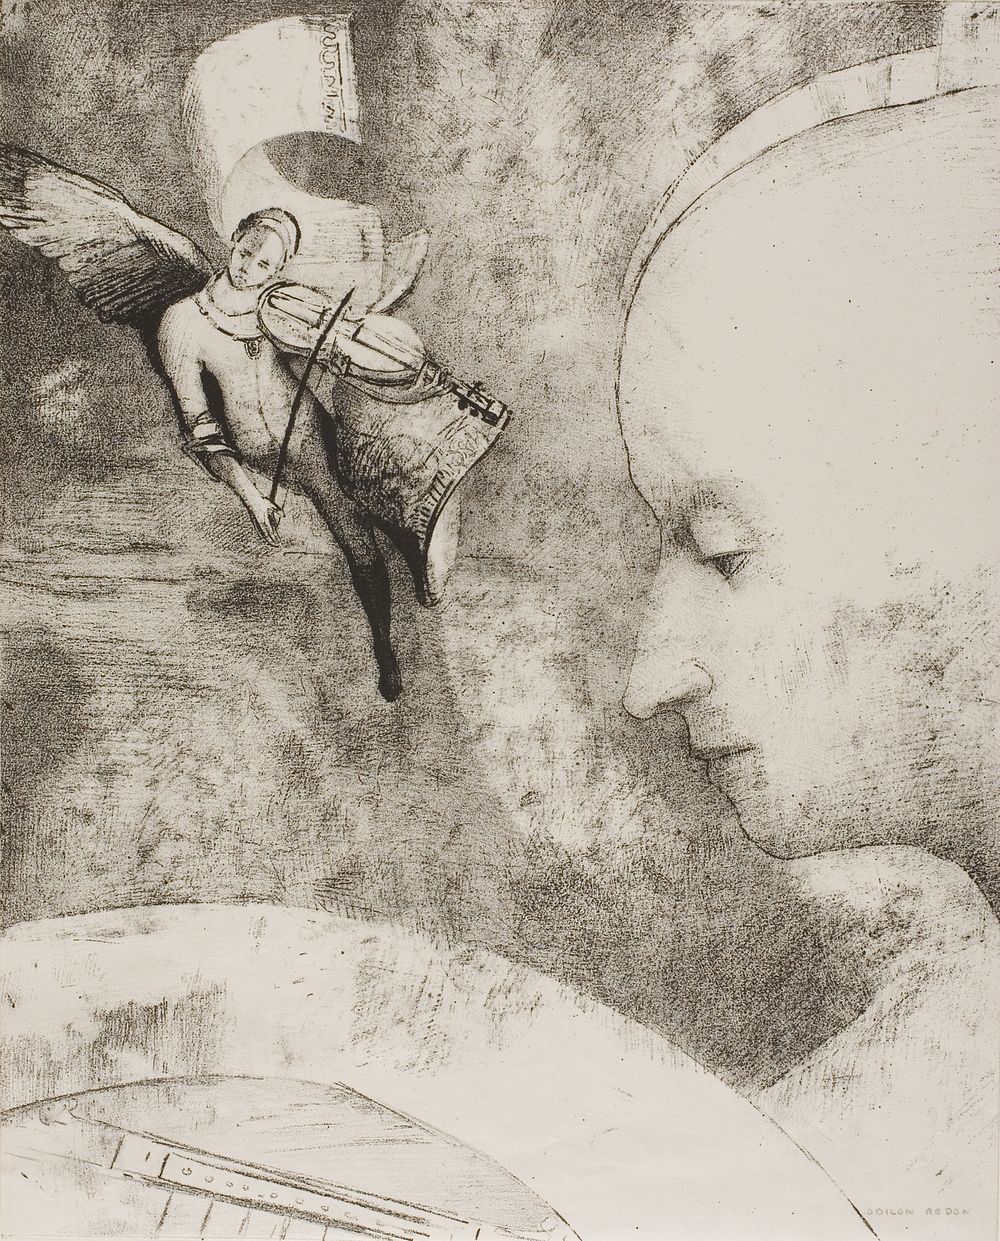 The Celestial Art by Odilon Redon